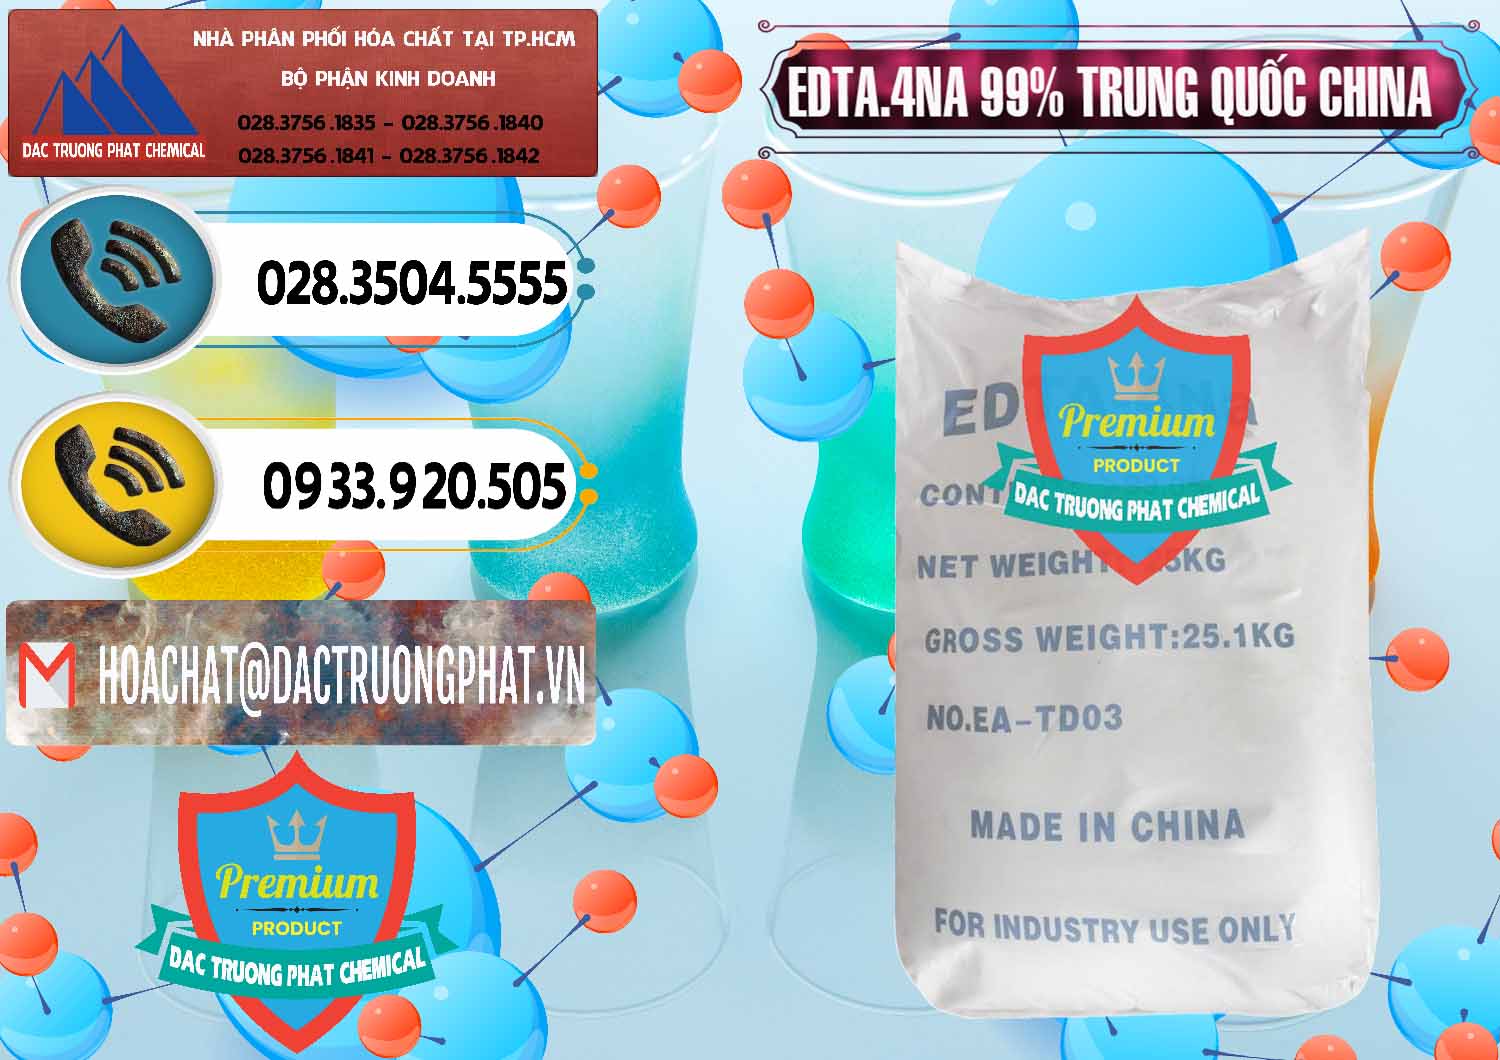 Đơn vị chuyên bán _ phân phối EDTA.4NA - EDTA Muối 99% Trung Quốc China - 0292 - Cty cung cấp _ phân phối hóa chất tại TP.HCM - hoachatdetnhuom.vn